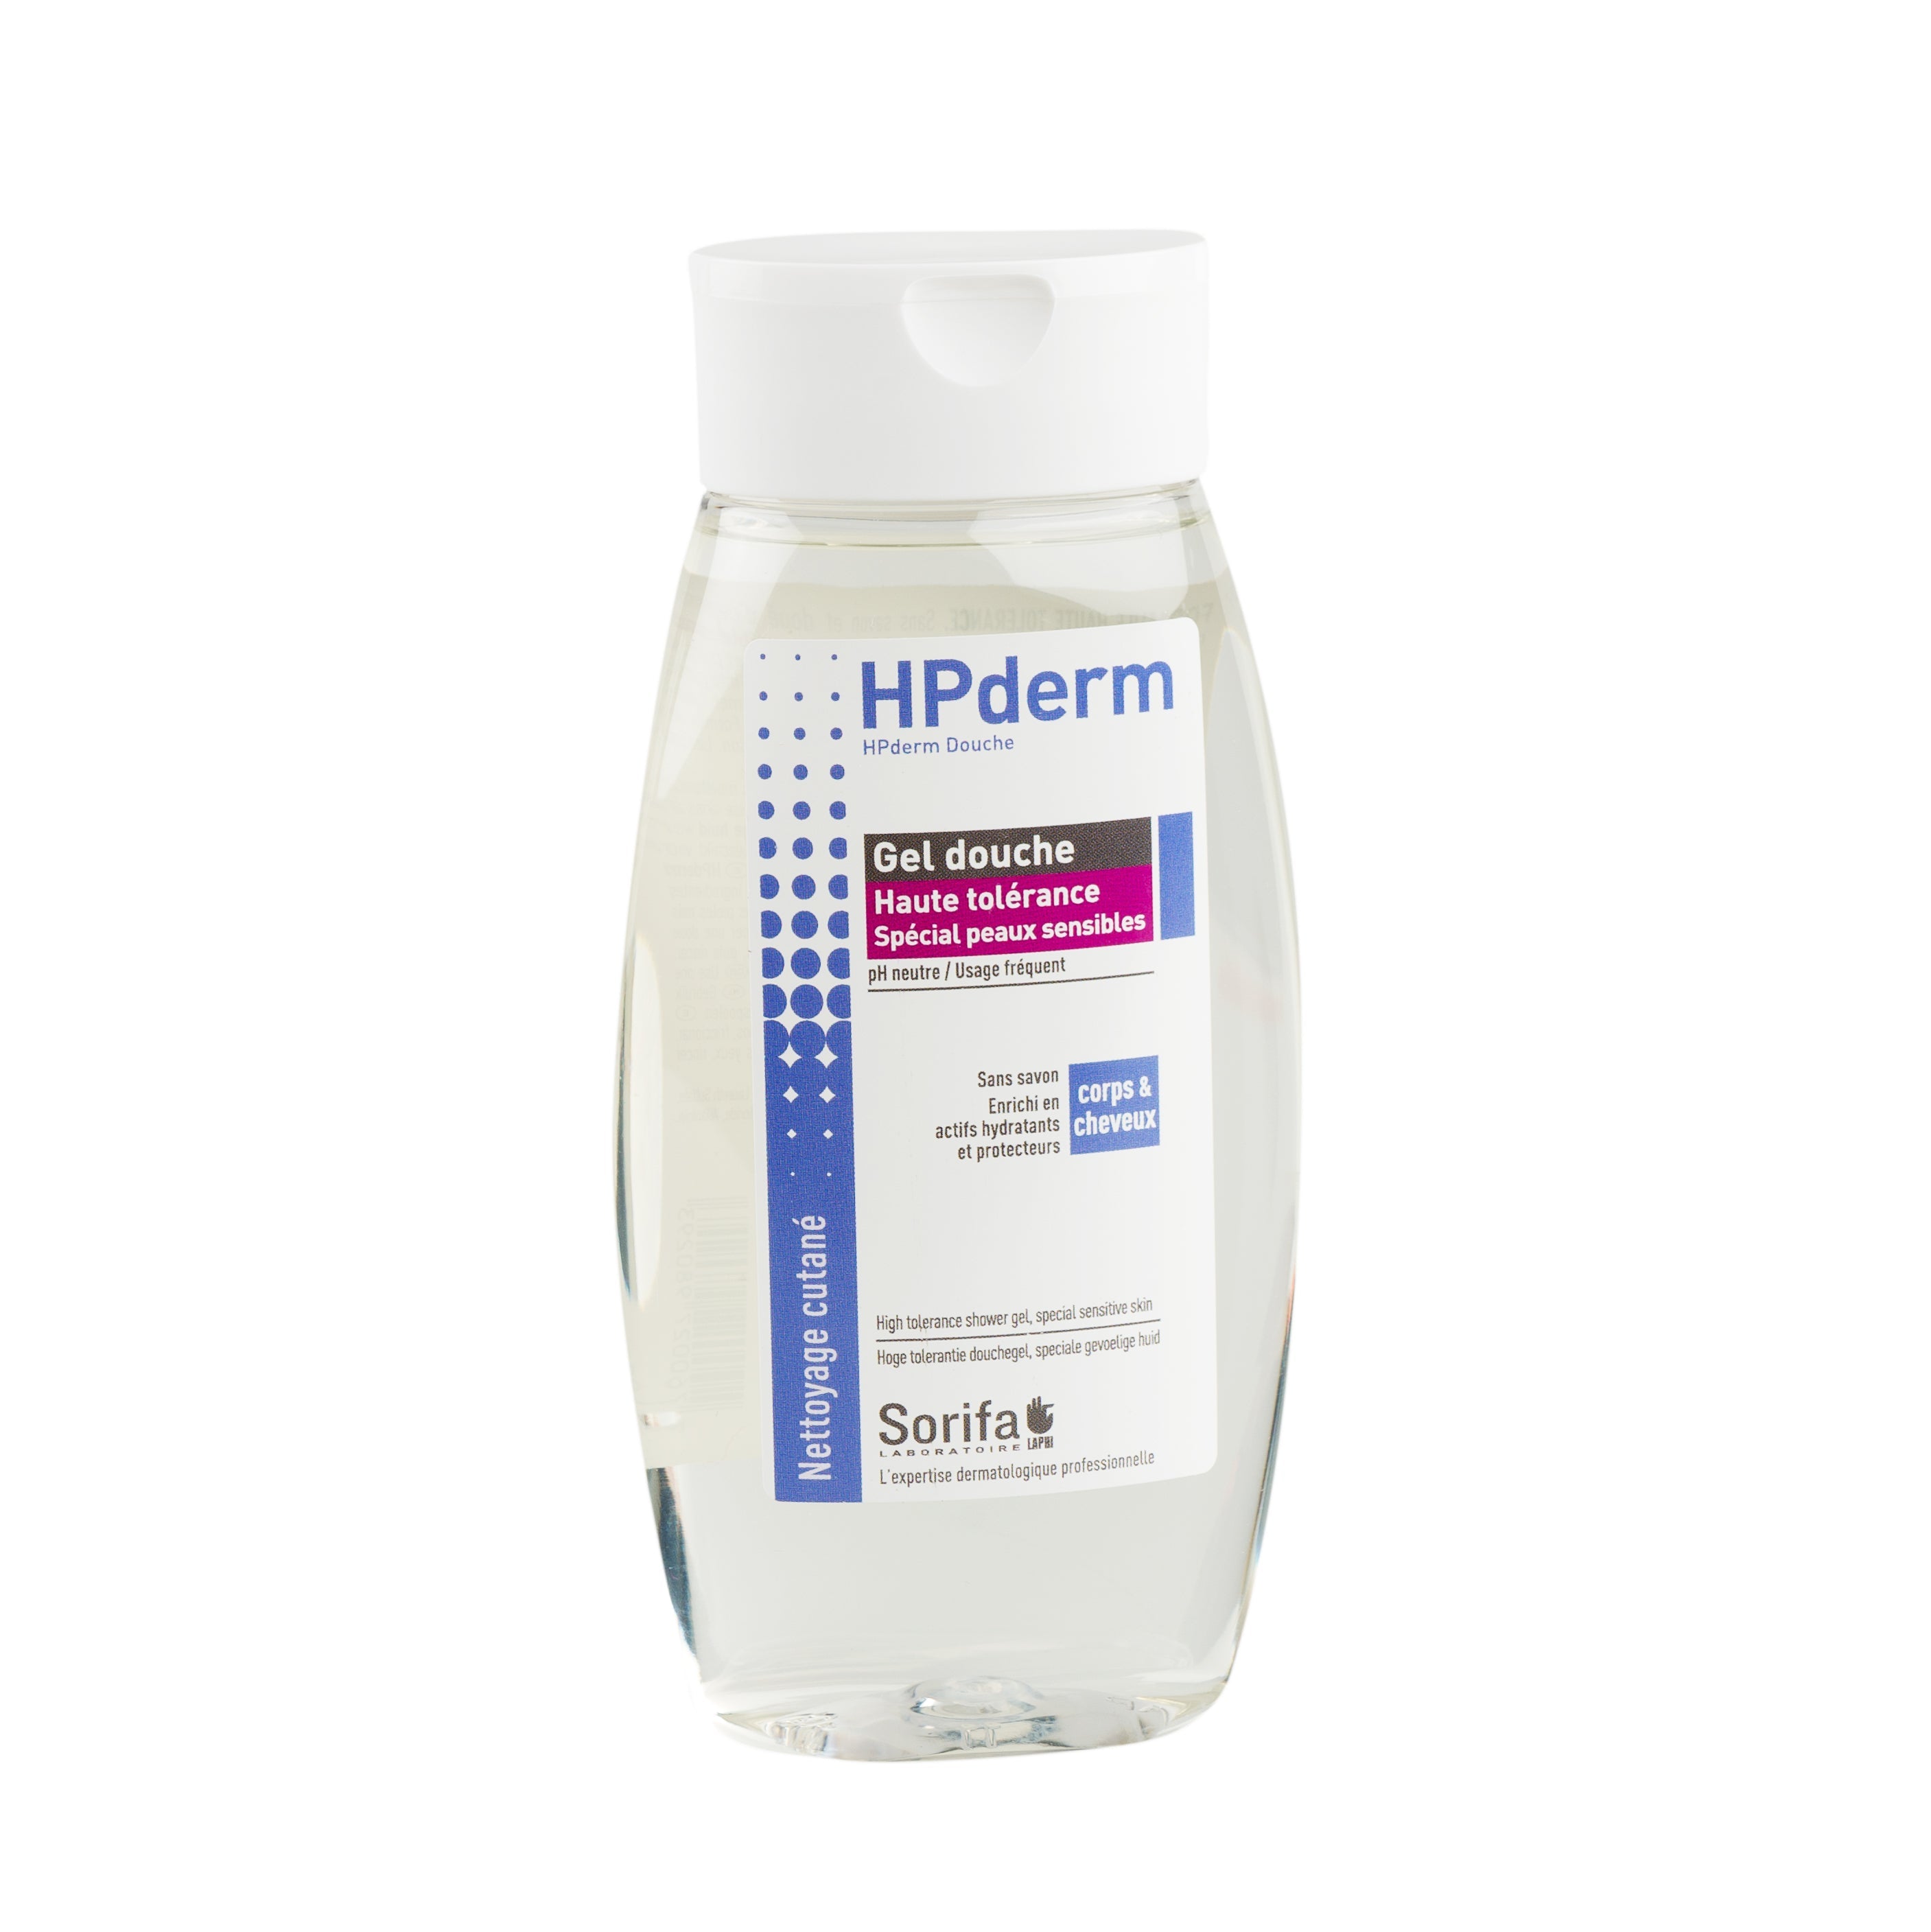 HPderm douche - Gel douche HAUTE TOLERANCE- Spécial peaux sensibles - Flacon de 250 ml clicktofournisseur.com